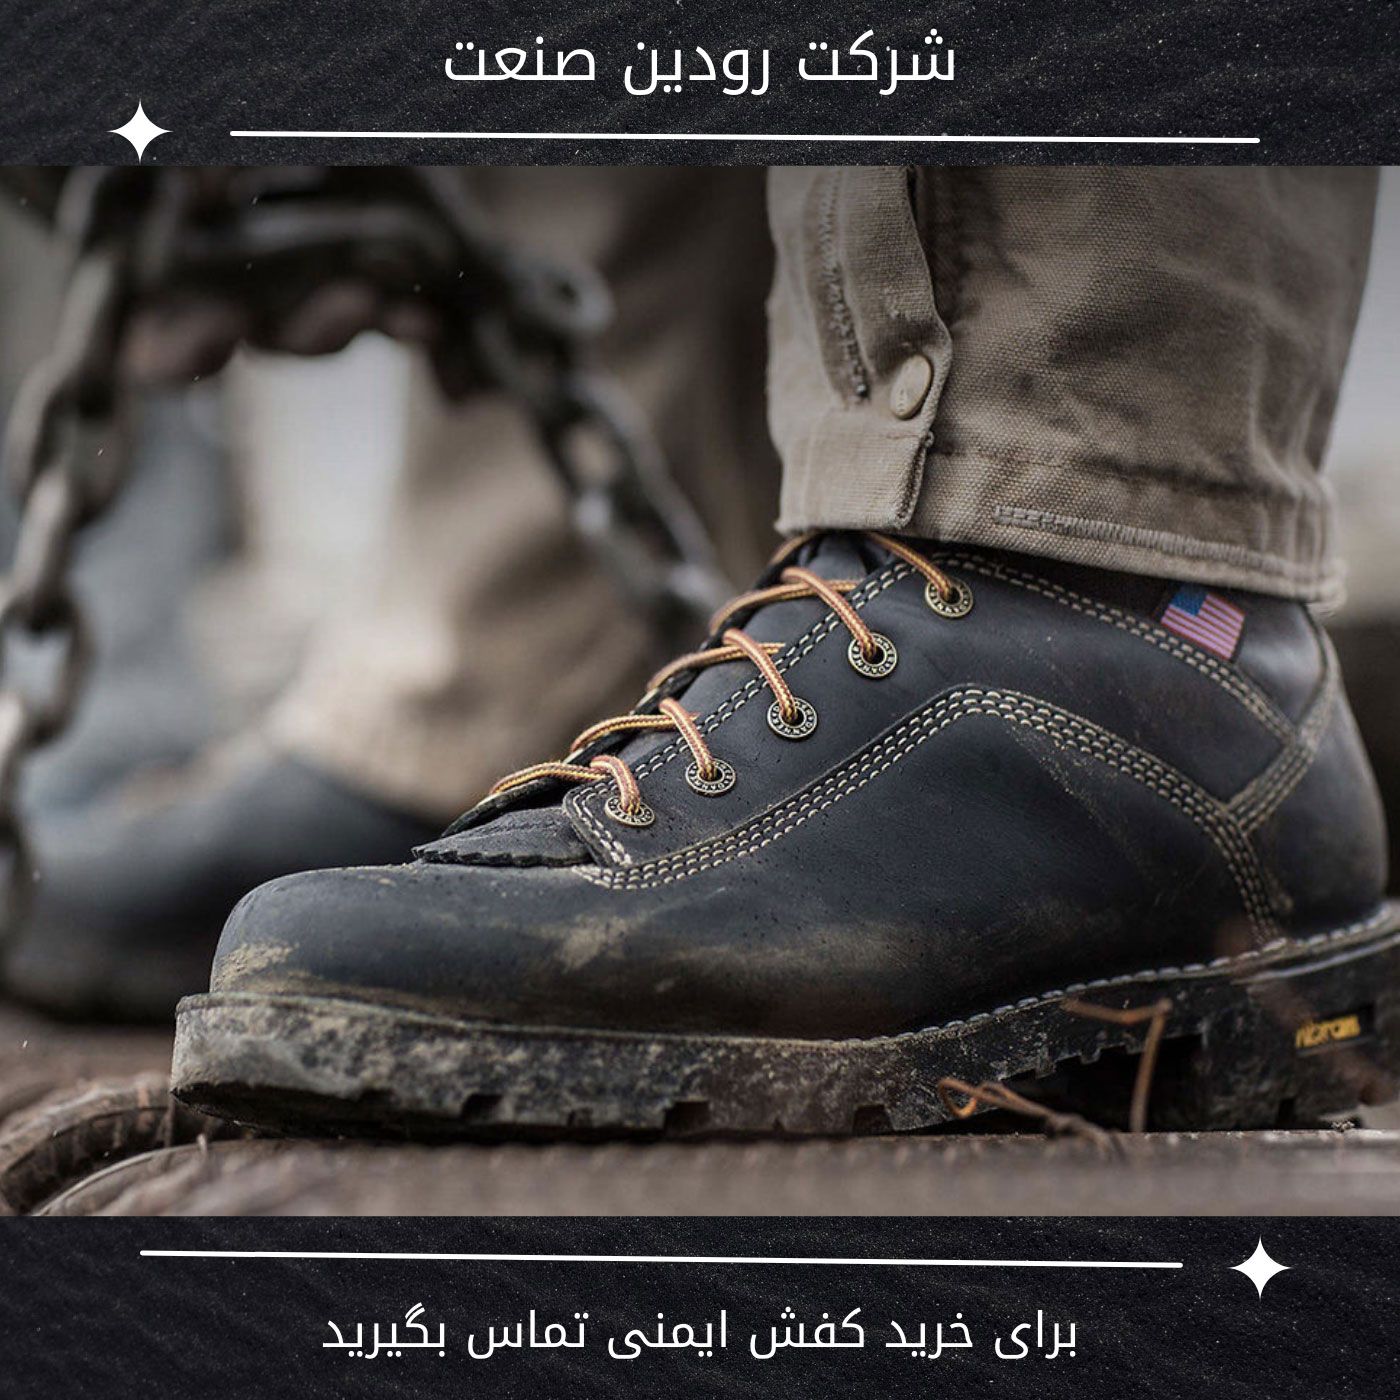 بزرگترین مرکز پخش کفش ایمنی و تجهیزات ایمنی در کشور ایران شرکت رودین صنعت میباشد.